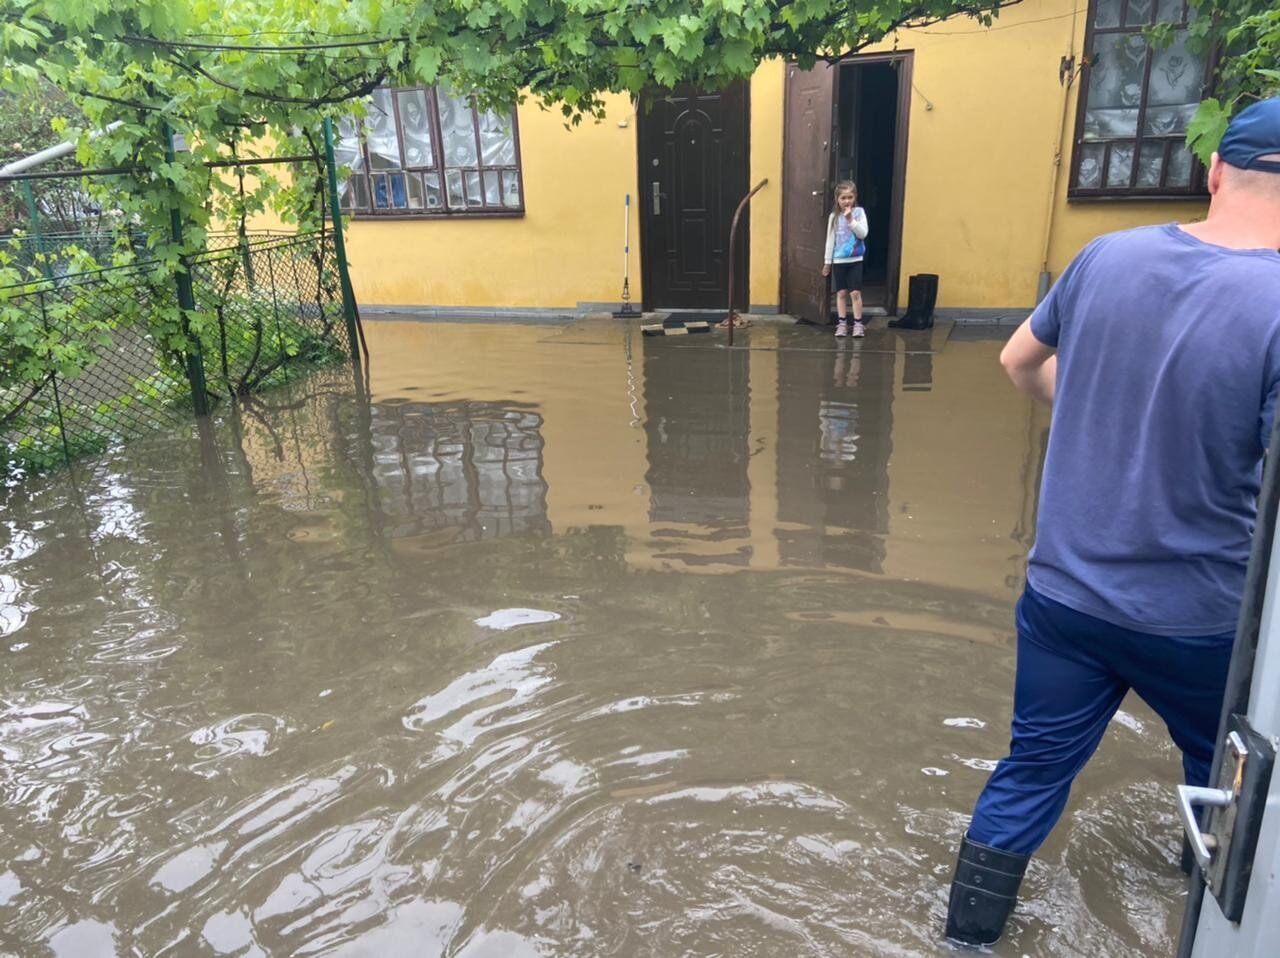 Подтопленная улица в Ивано-Франковске